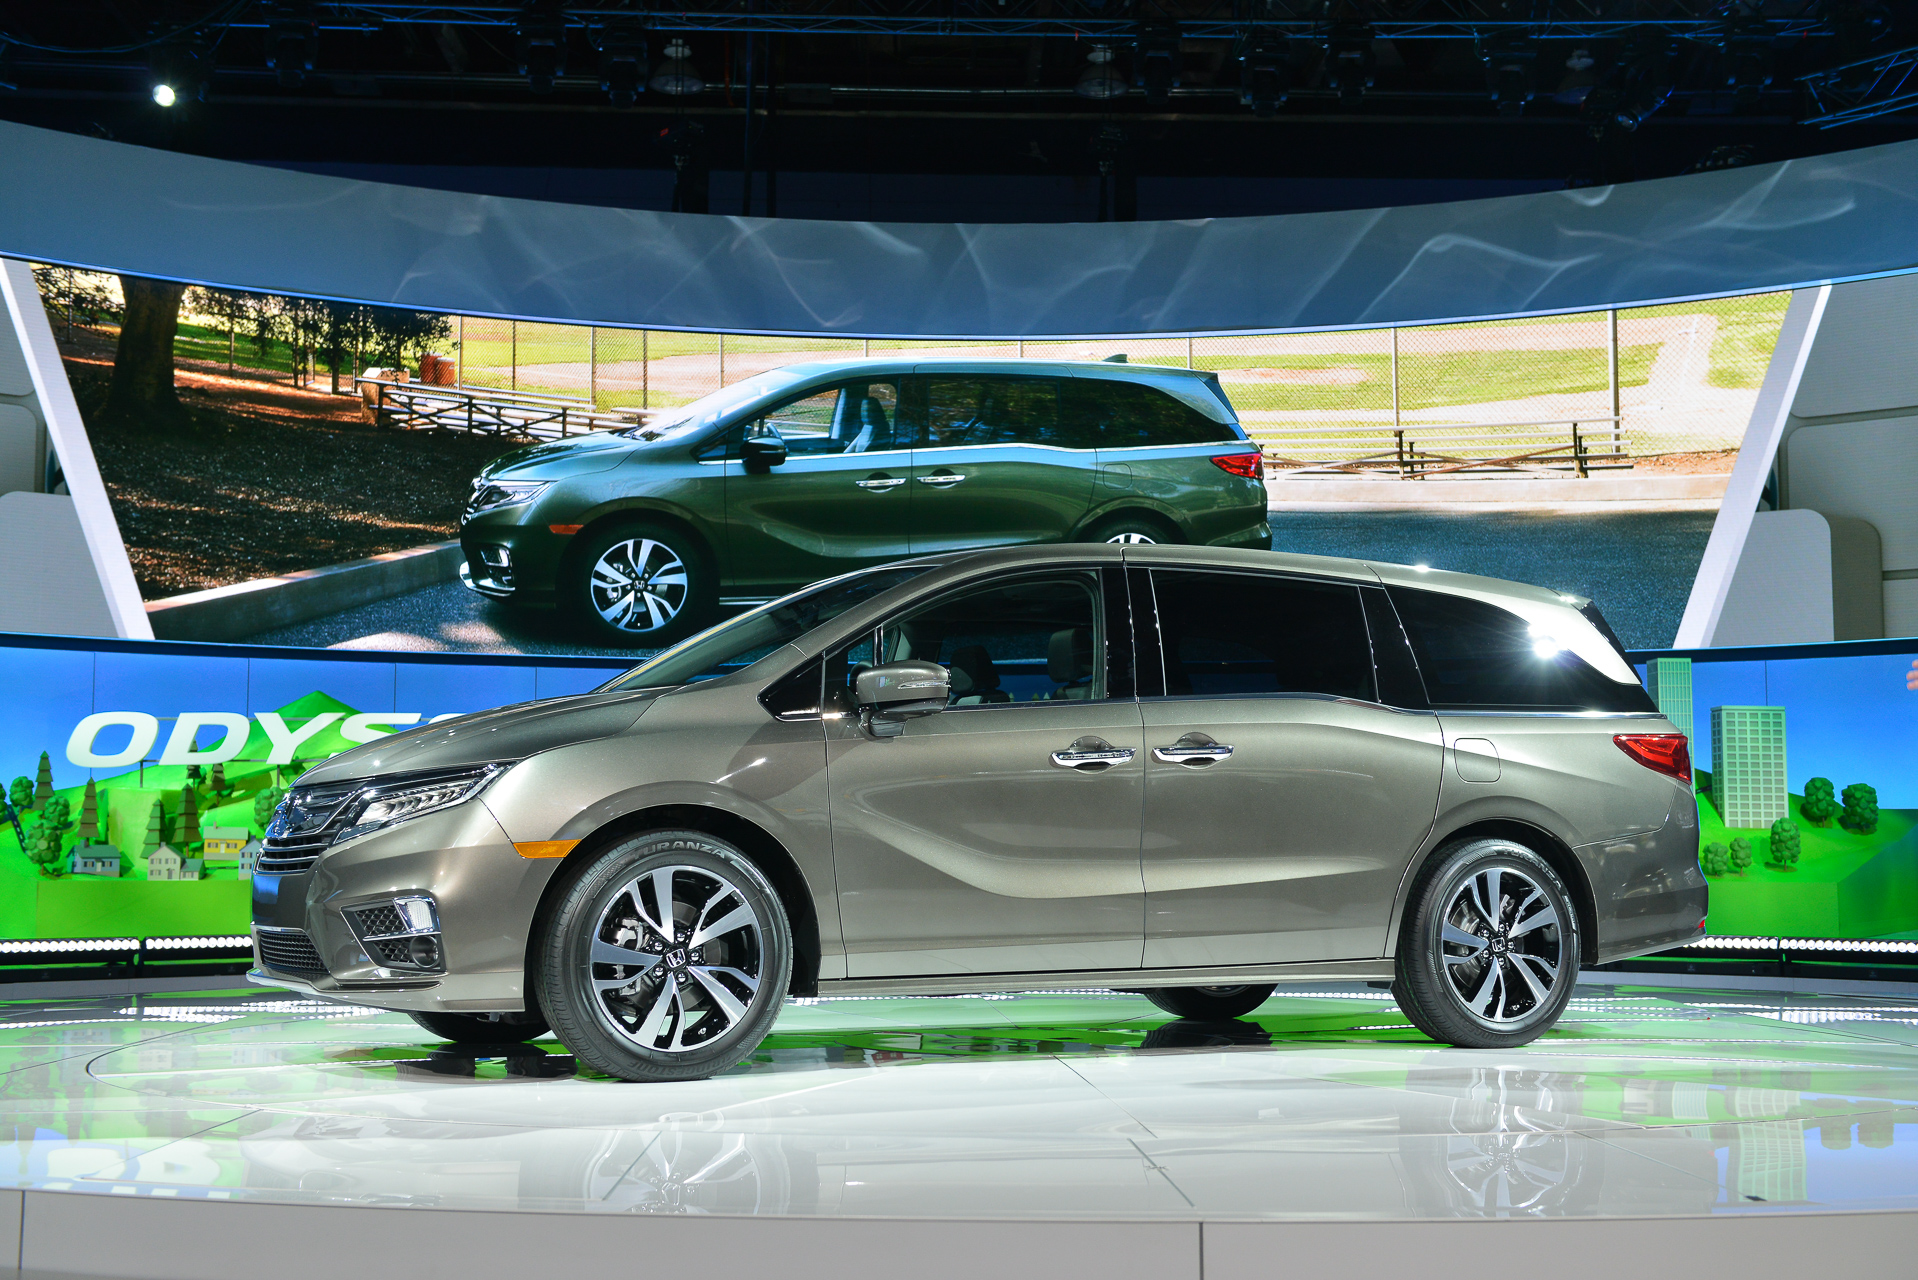 Honda hybrid minivan, SUV, or pickup coming; dedicated hybrid in 2018 too